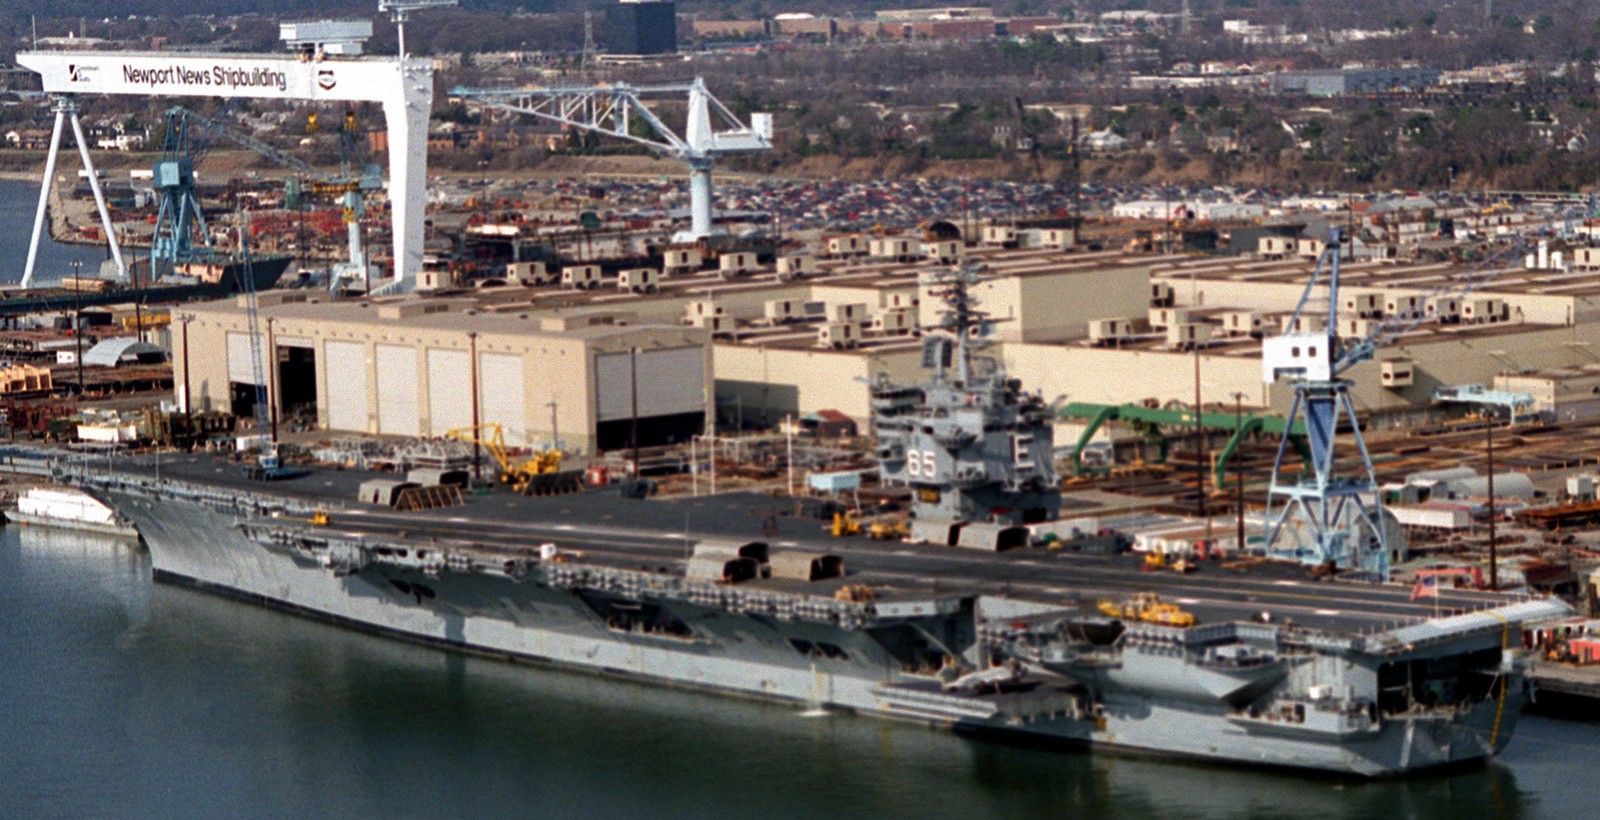 cvn-65 uss enterprise aircraft carrier us navy newport news 1995 89